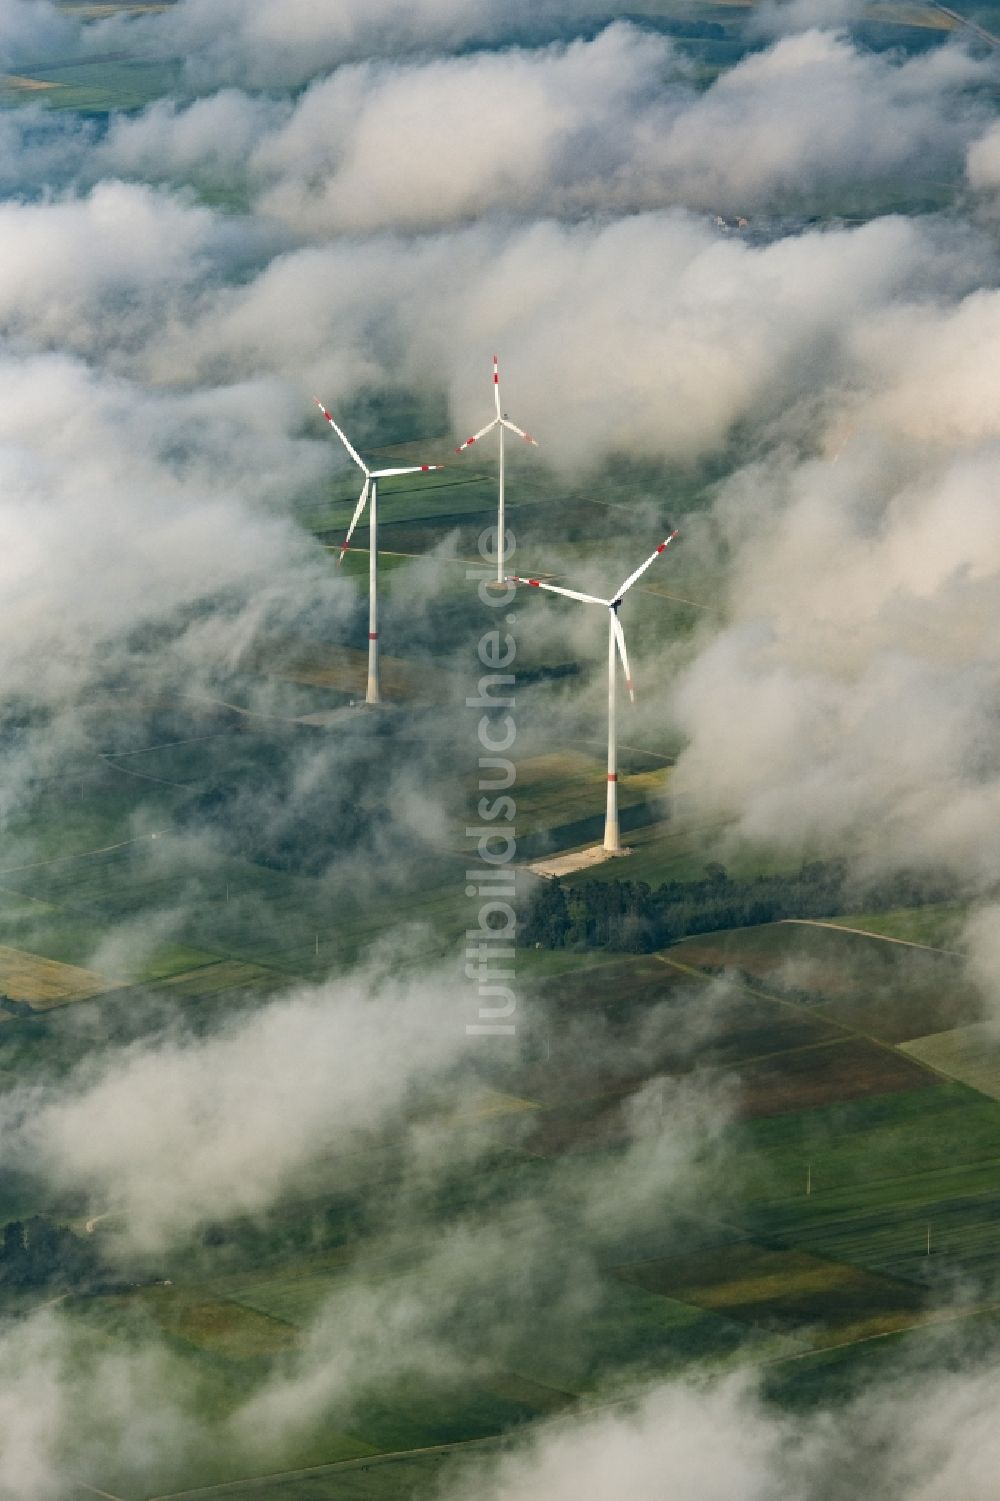 Titting von oben - Wetterbedingt in eine Wolken- Schicht eingebettete Windenergieanlagen in Titting im Bundesland Bayern, Deutschland